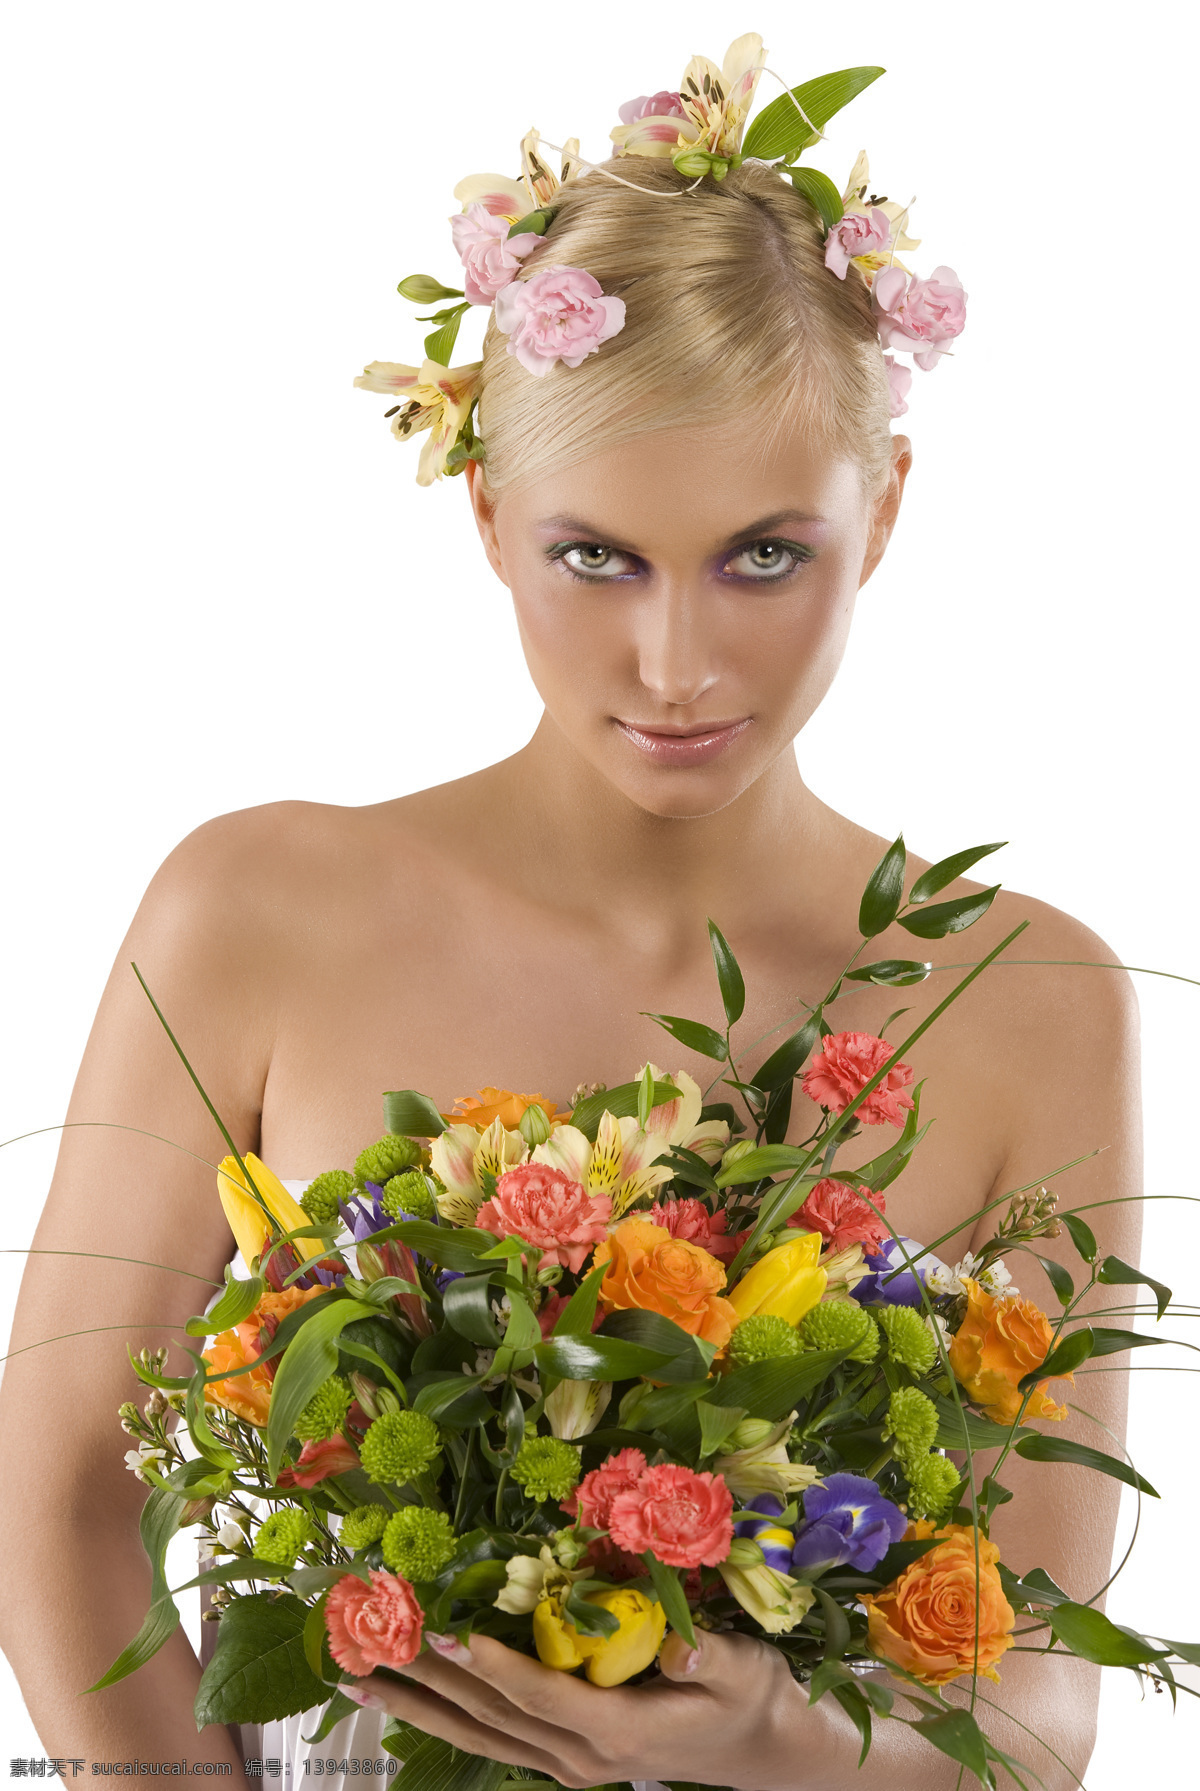 手 捧 鲜花 美女图片 春天女人 女性 性感美女 模特 美女写真 花朵 花卉 人物图片